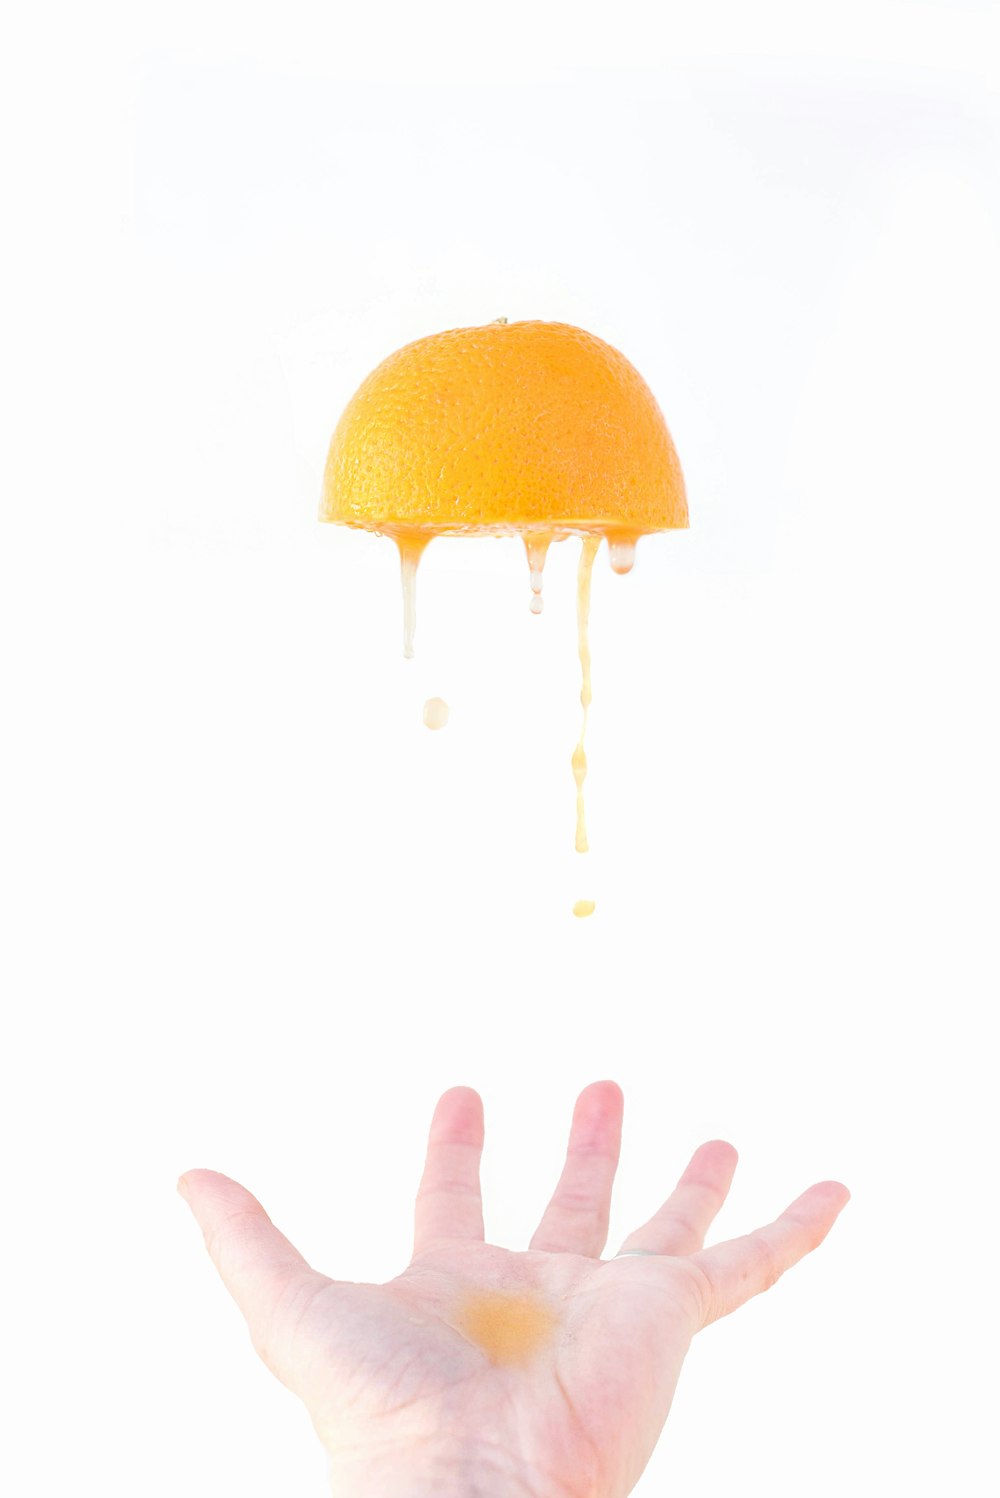 Persona che tiene la frutta arancione con le goccioline d'acqua